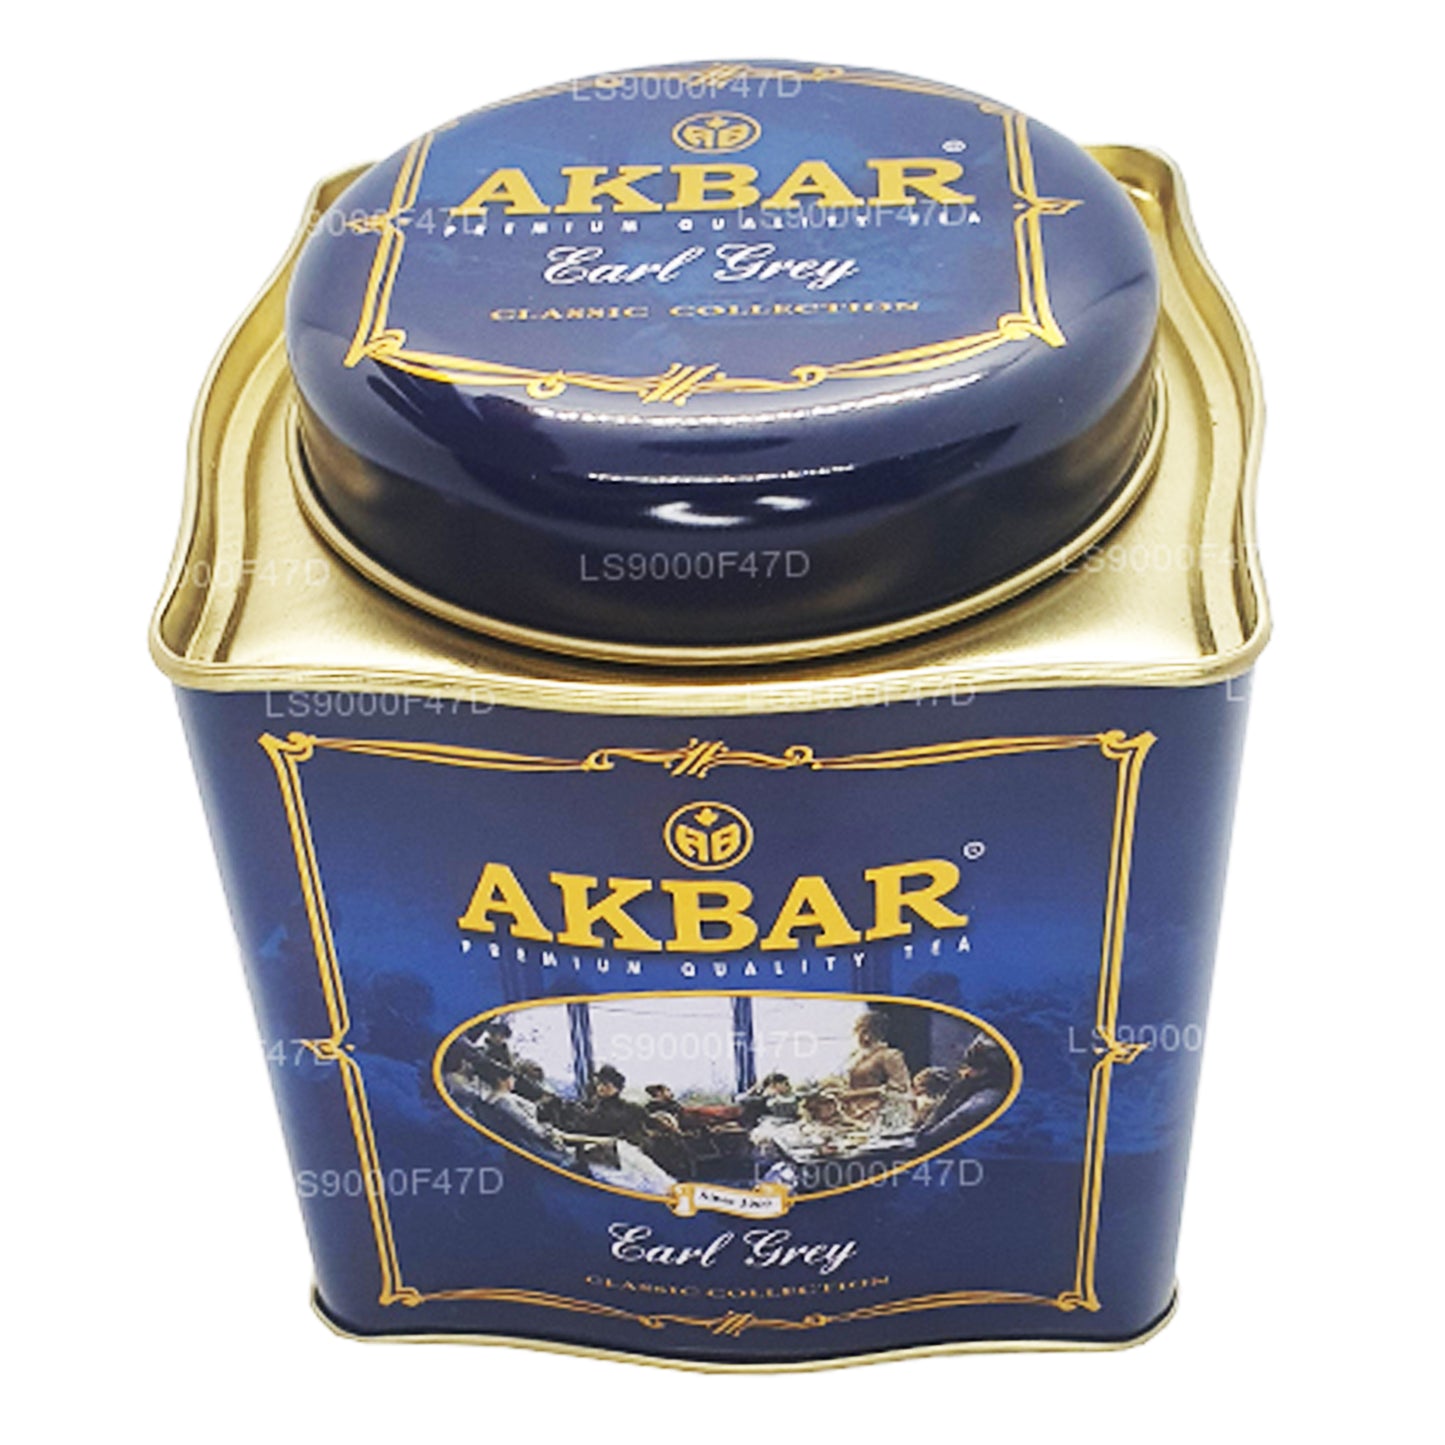 Akbar Classic Earl Grey Leaf thee (250 g) blikje